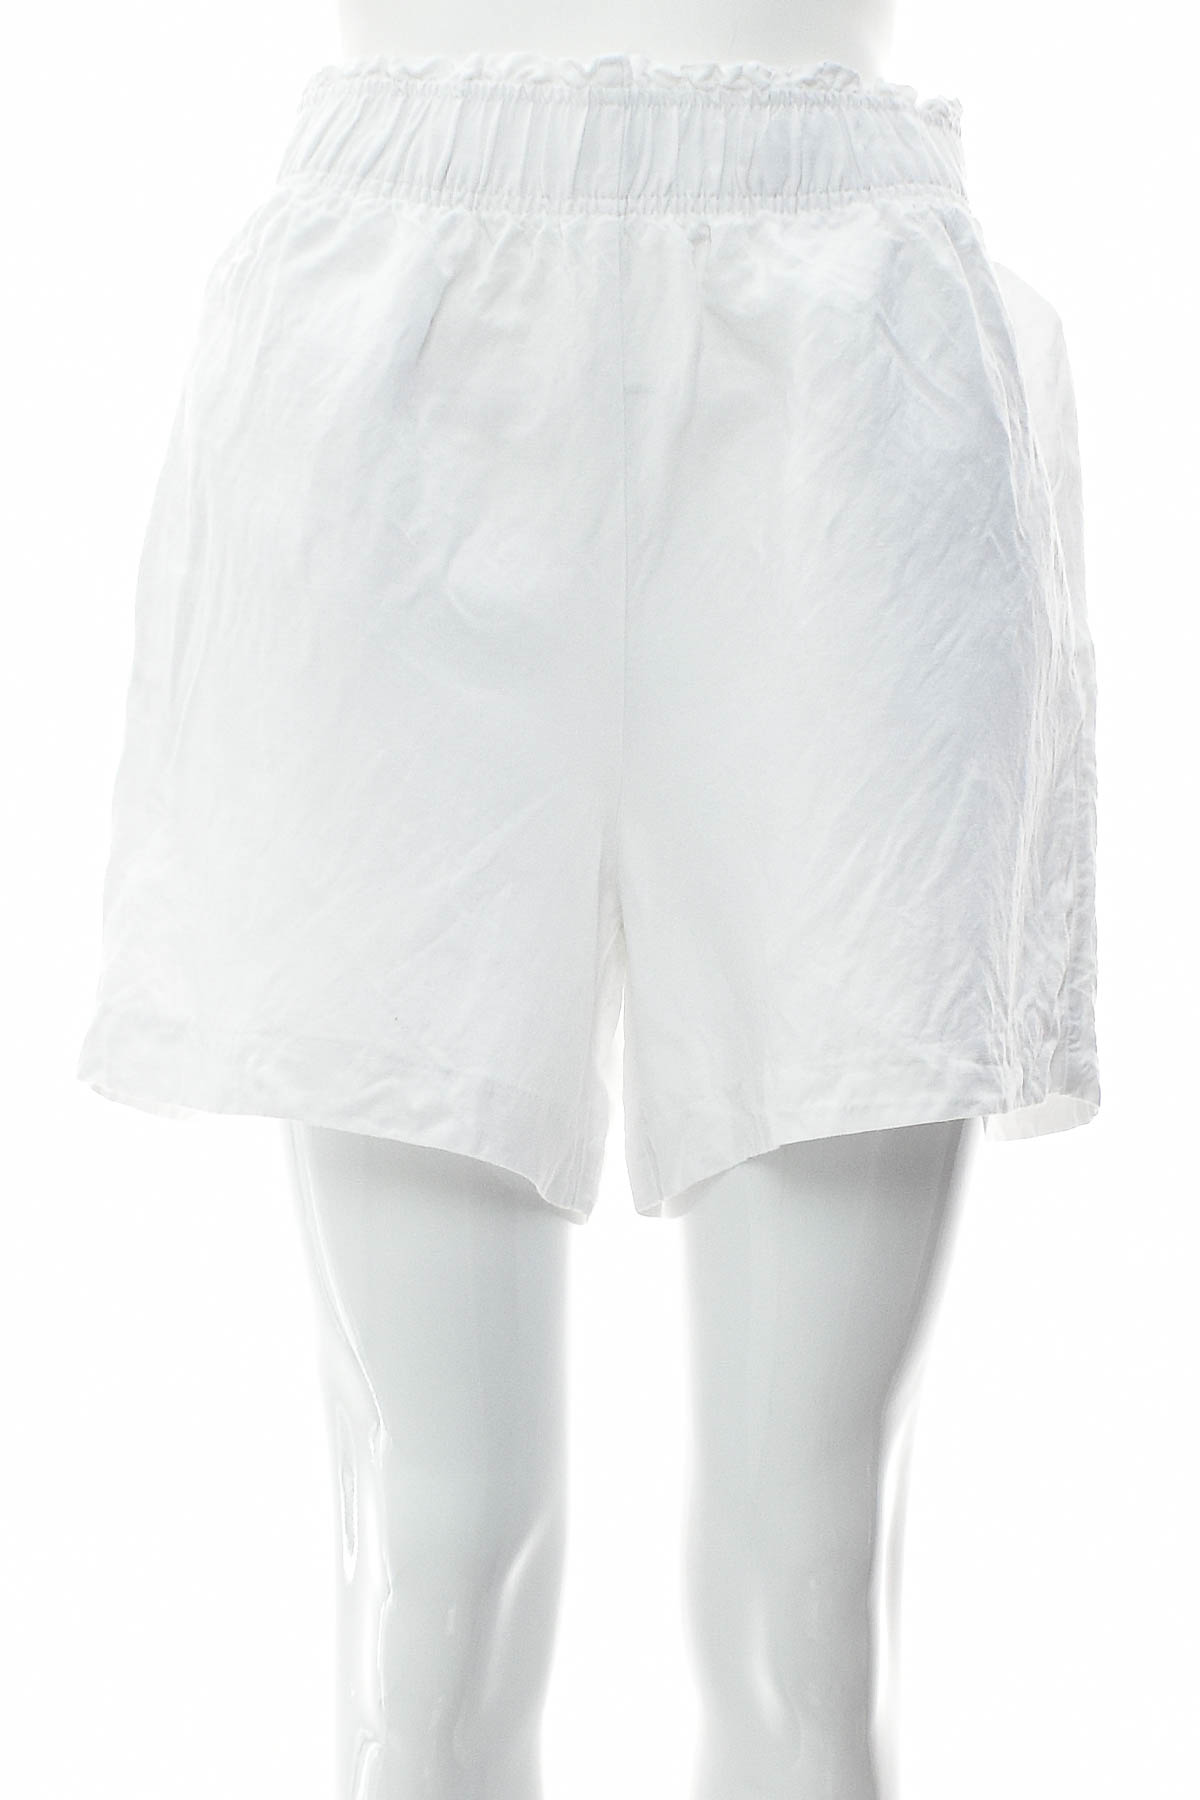 Female shorts - H&M - 0